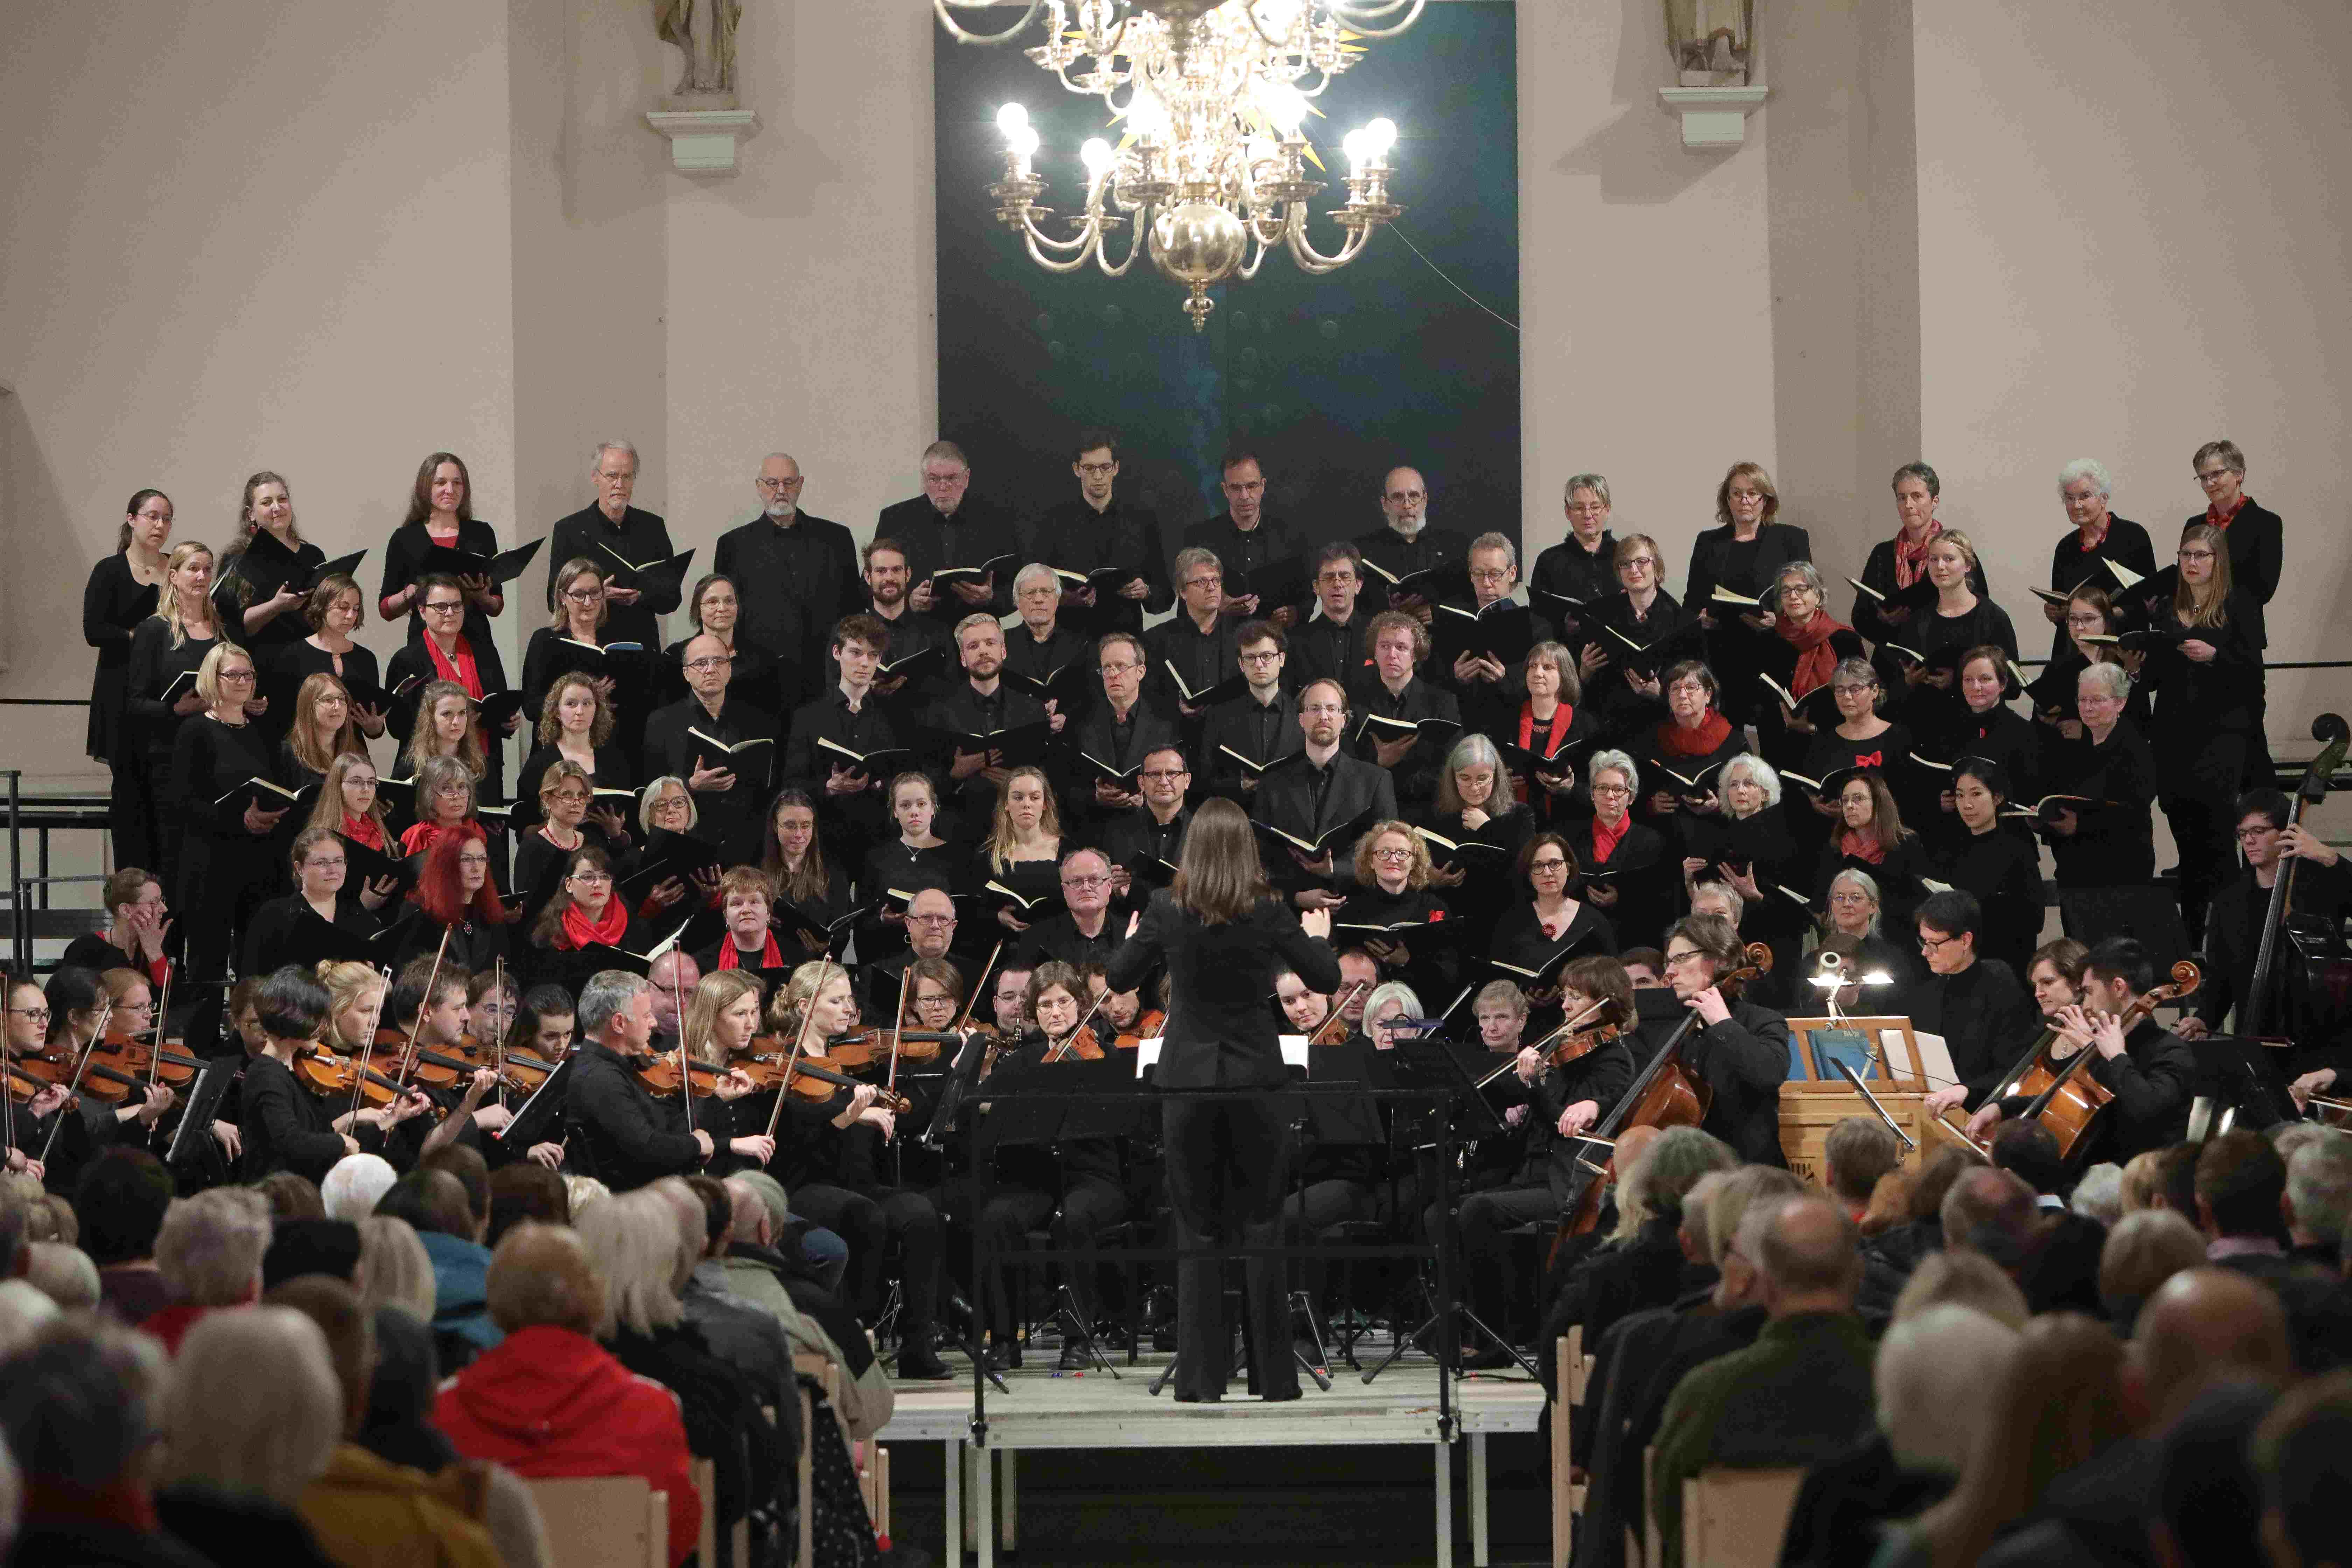 Die Sängerinnen und Sänger des Chors der MHH bei einem Auftritt in schwarzer Kleidung.